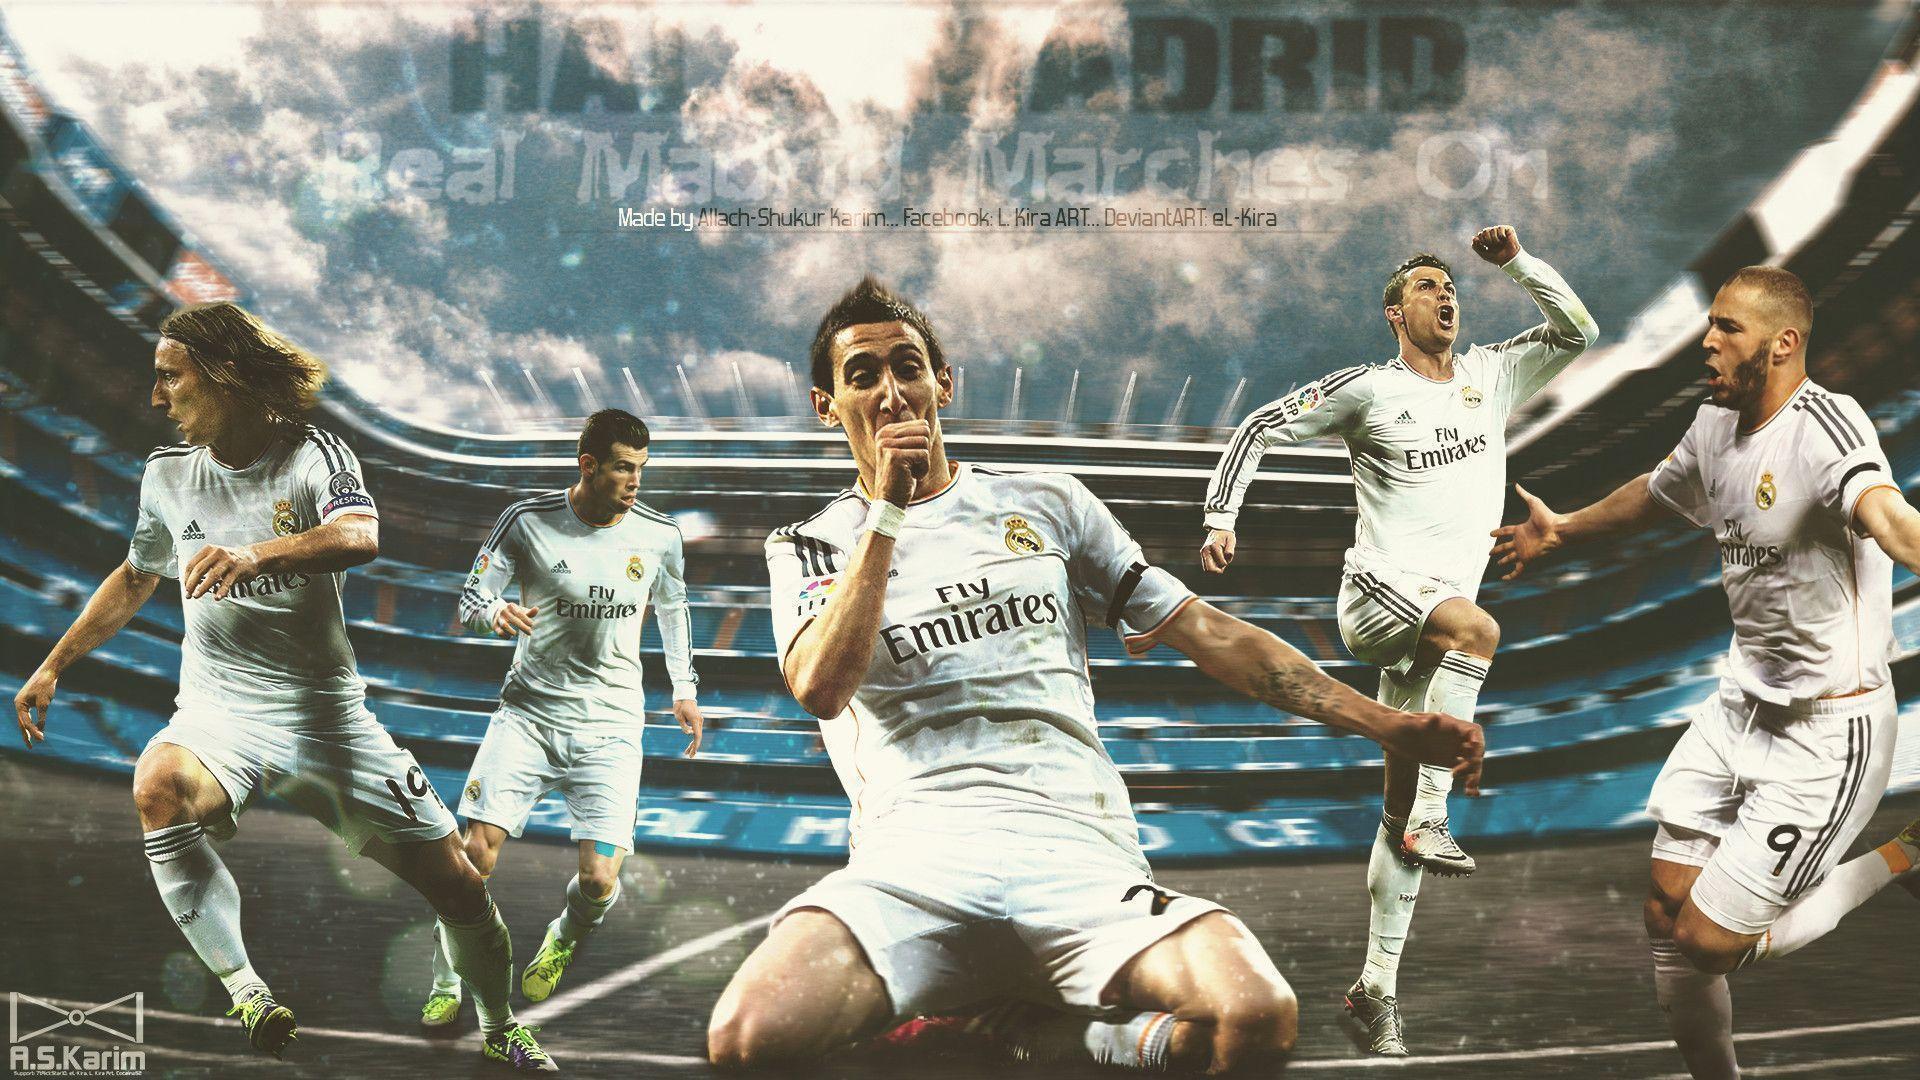 Real Madrid Wallpapers: Bạn là fan hâm mộ Real Madrid? Hãy lựa chọn cho mình bộ sưu tập hình nền Real Madrid đẹp mắt nhất từ trước đến nay. Với sự kết hợp phối màu và hình ảnh hoàn hảo, các hình nền này sẽ khiến cho máy tính của bạn trở nên hoàn hảo hơn và ca ngợi tình yêu của bạn với đội bóng mà bạn yêu thích.